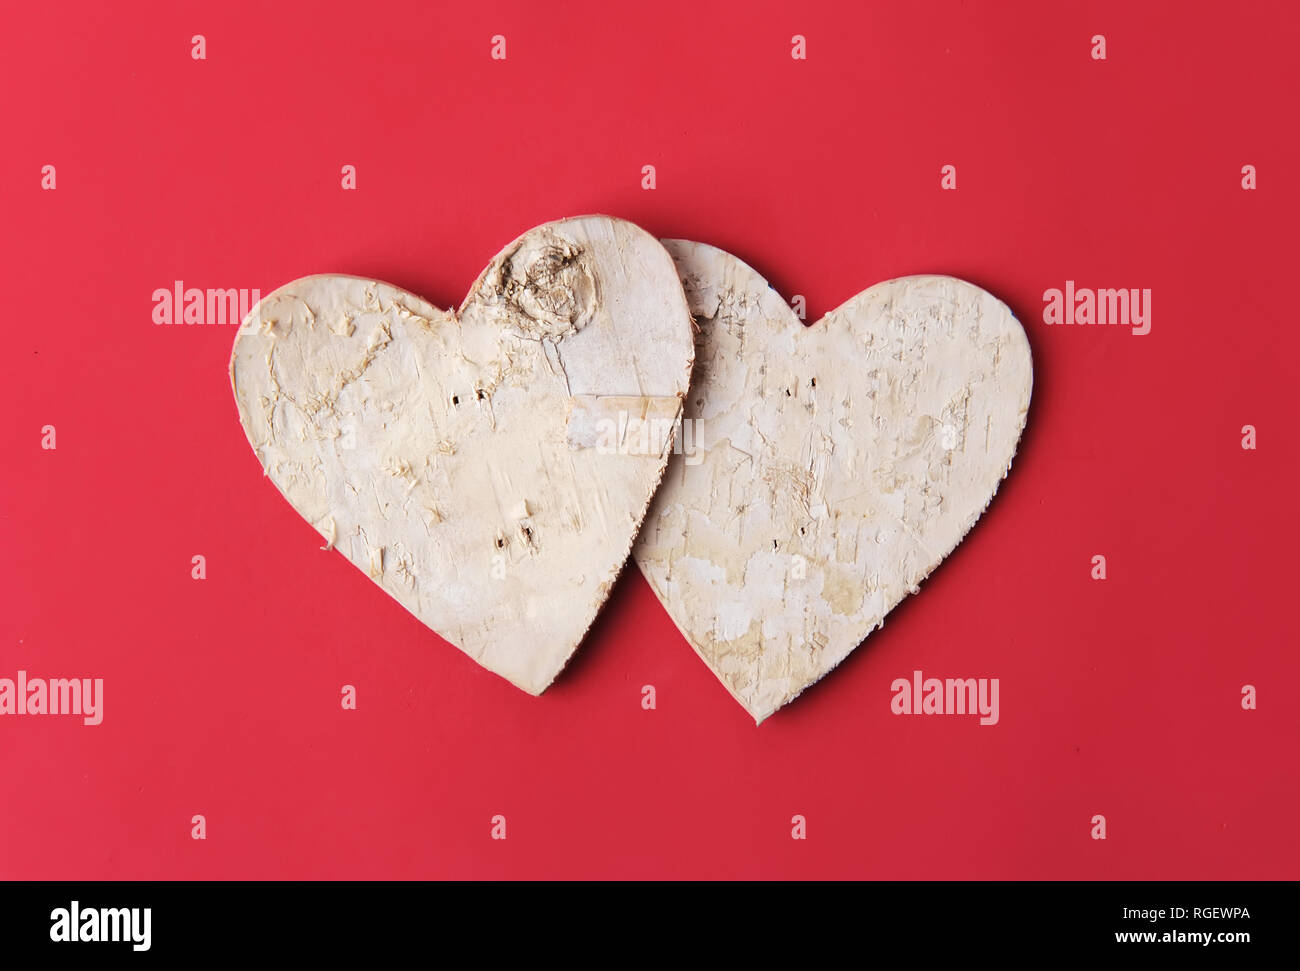 Love forever. Heart shape make of tree bark on red paper Stock Photo